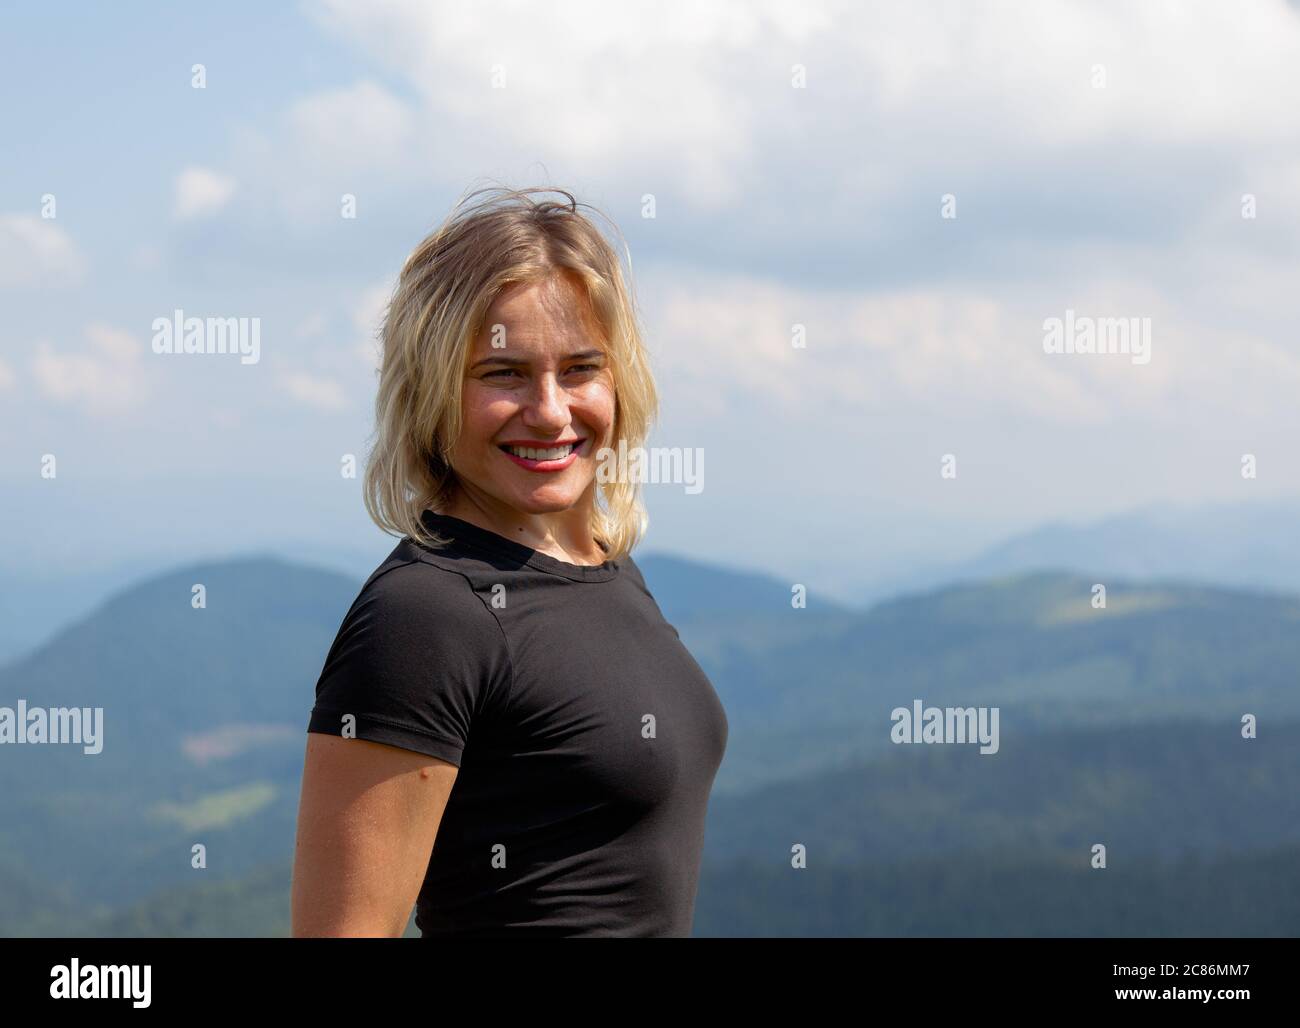 Schönes Mädchen reist in einem engen T-Shirt hoch in den Bergen Stockfoto